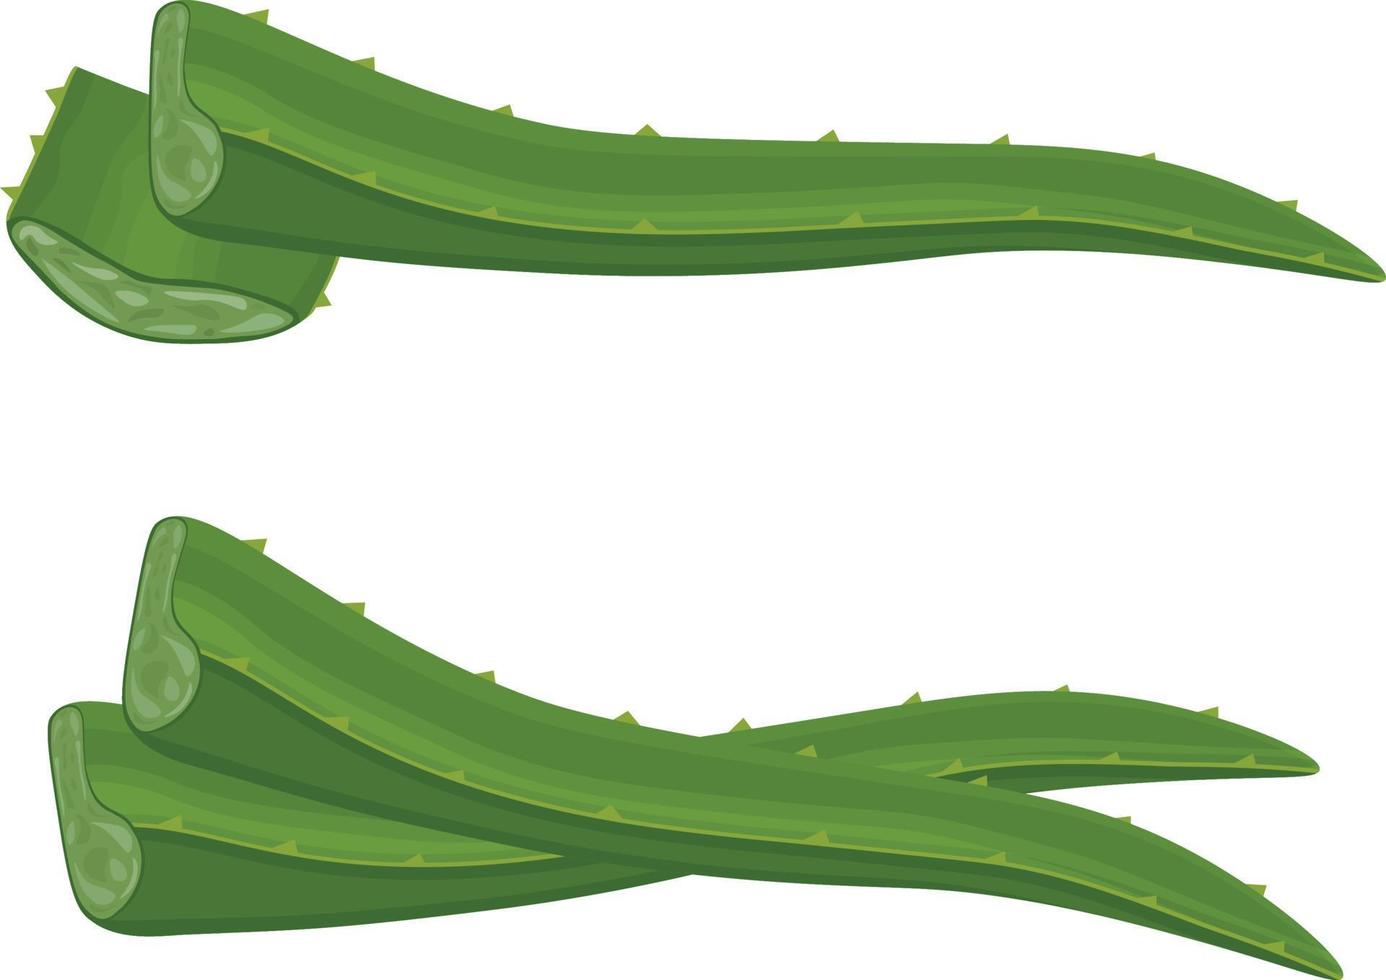 aloe löv. bild av de grön medicinsk växt aloe vera. aloe löv i sektion. vektor illustration isolerat på en vit bakgrund. för de design av etiketter för förpackning av hud vård Produkter